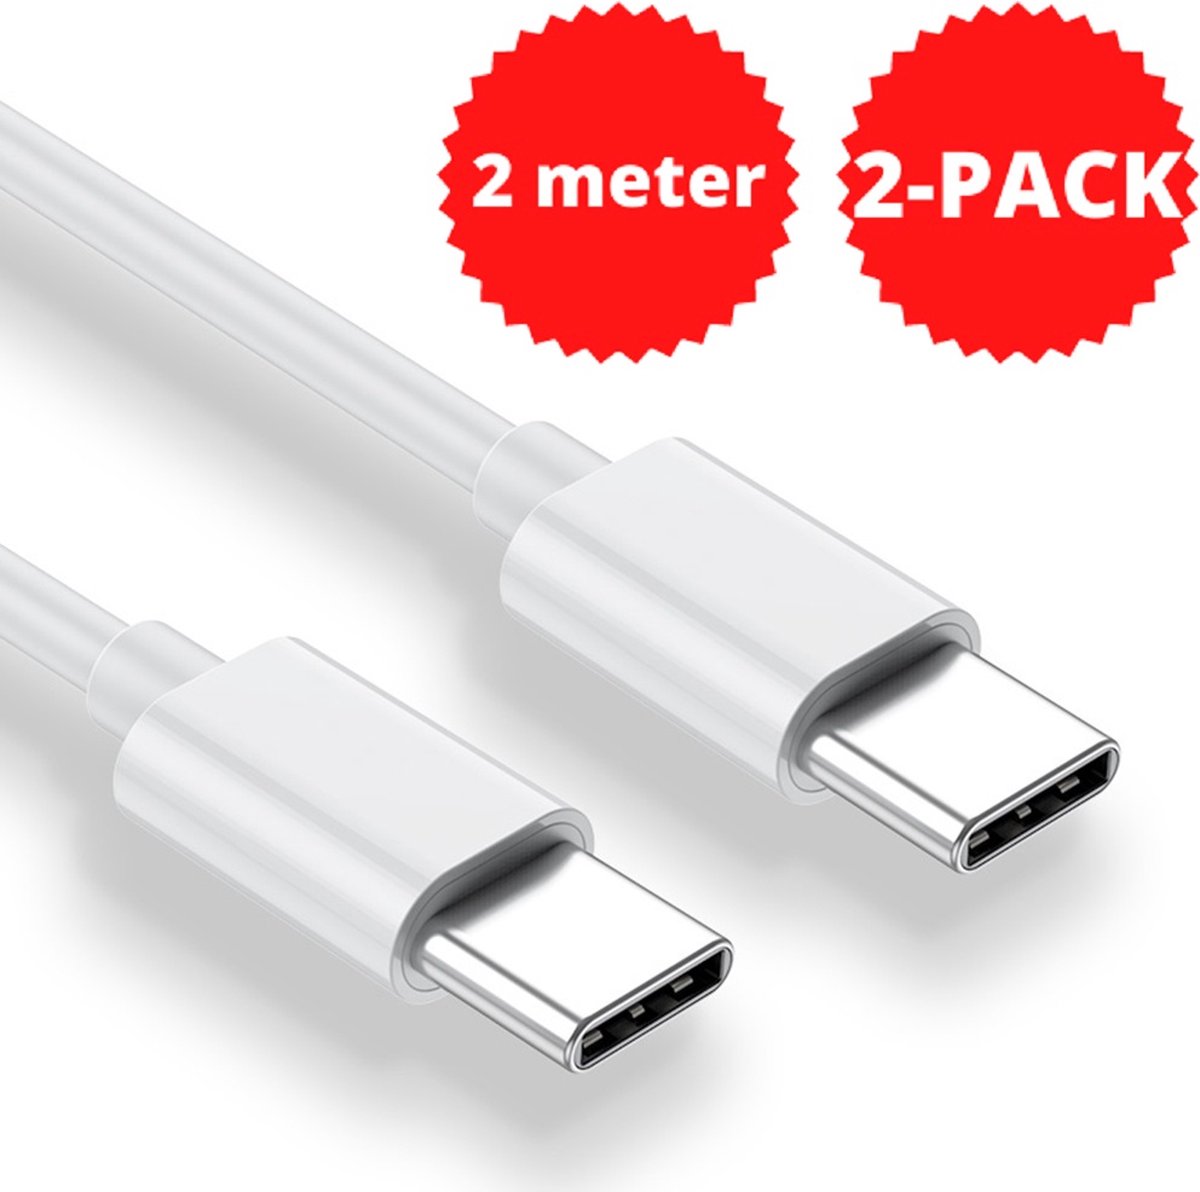 USB C kabel 2 Meter 85W 4A - USB C naar USB C - Geschikt voor Apple iPhone 15, Macbook, iPad Pro/Air, Samsung Galaxy/Note - Extra stevig - 2-PACK